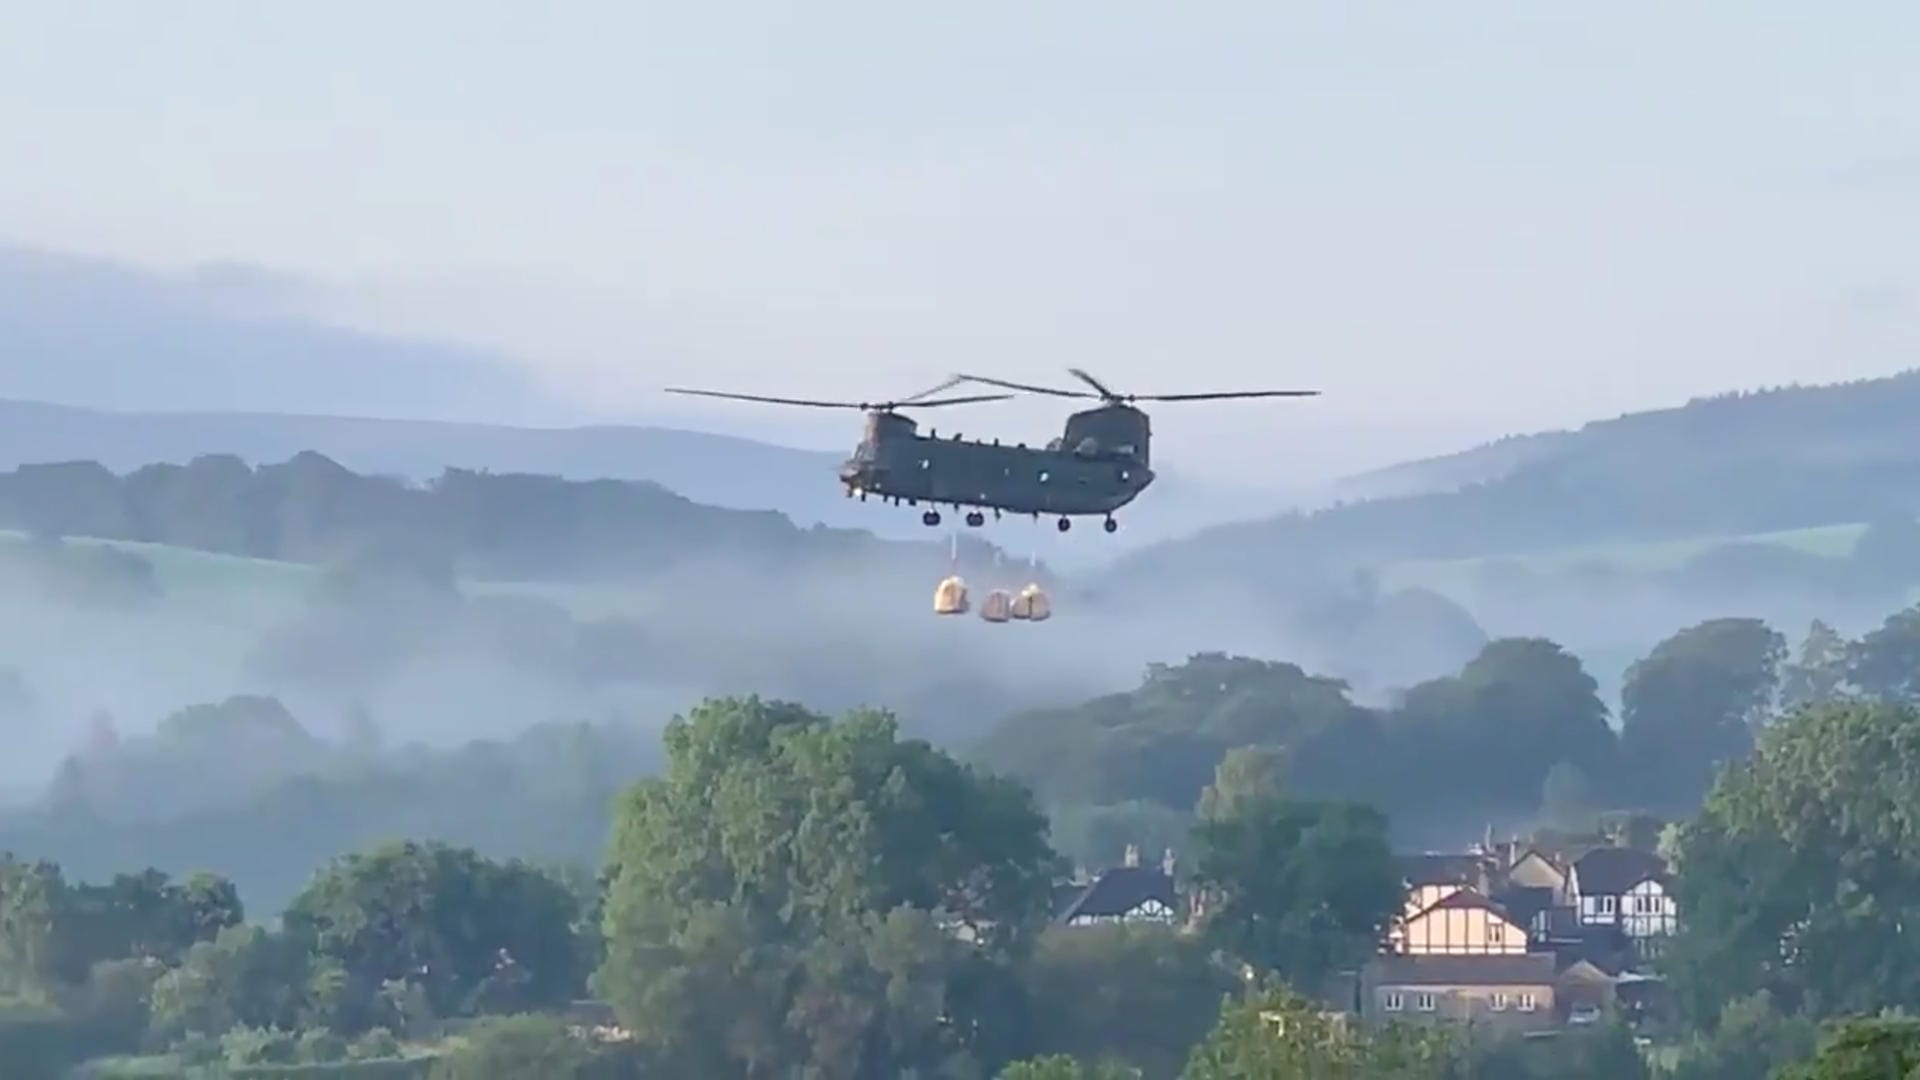 Chinook Helikopter mit Sandsäcken: Die Kleinstadt Whaley Bridge wäre im Fall eines Dammbruchs extrem gefährdet.